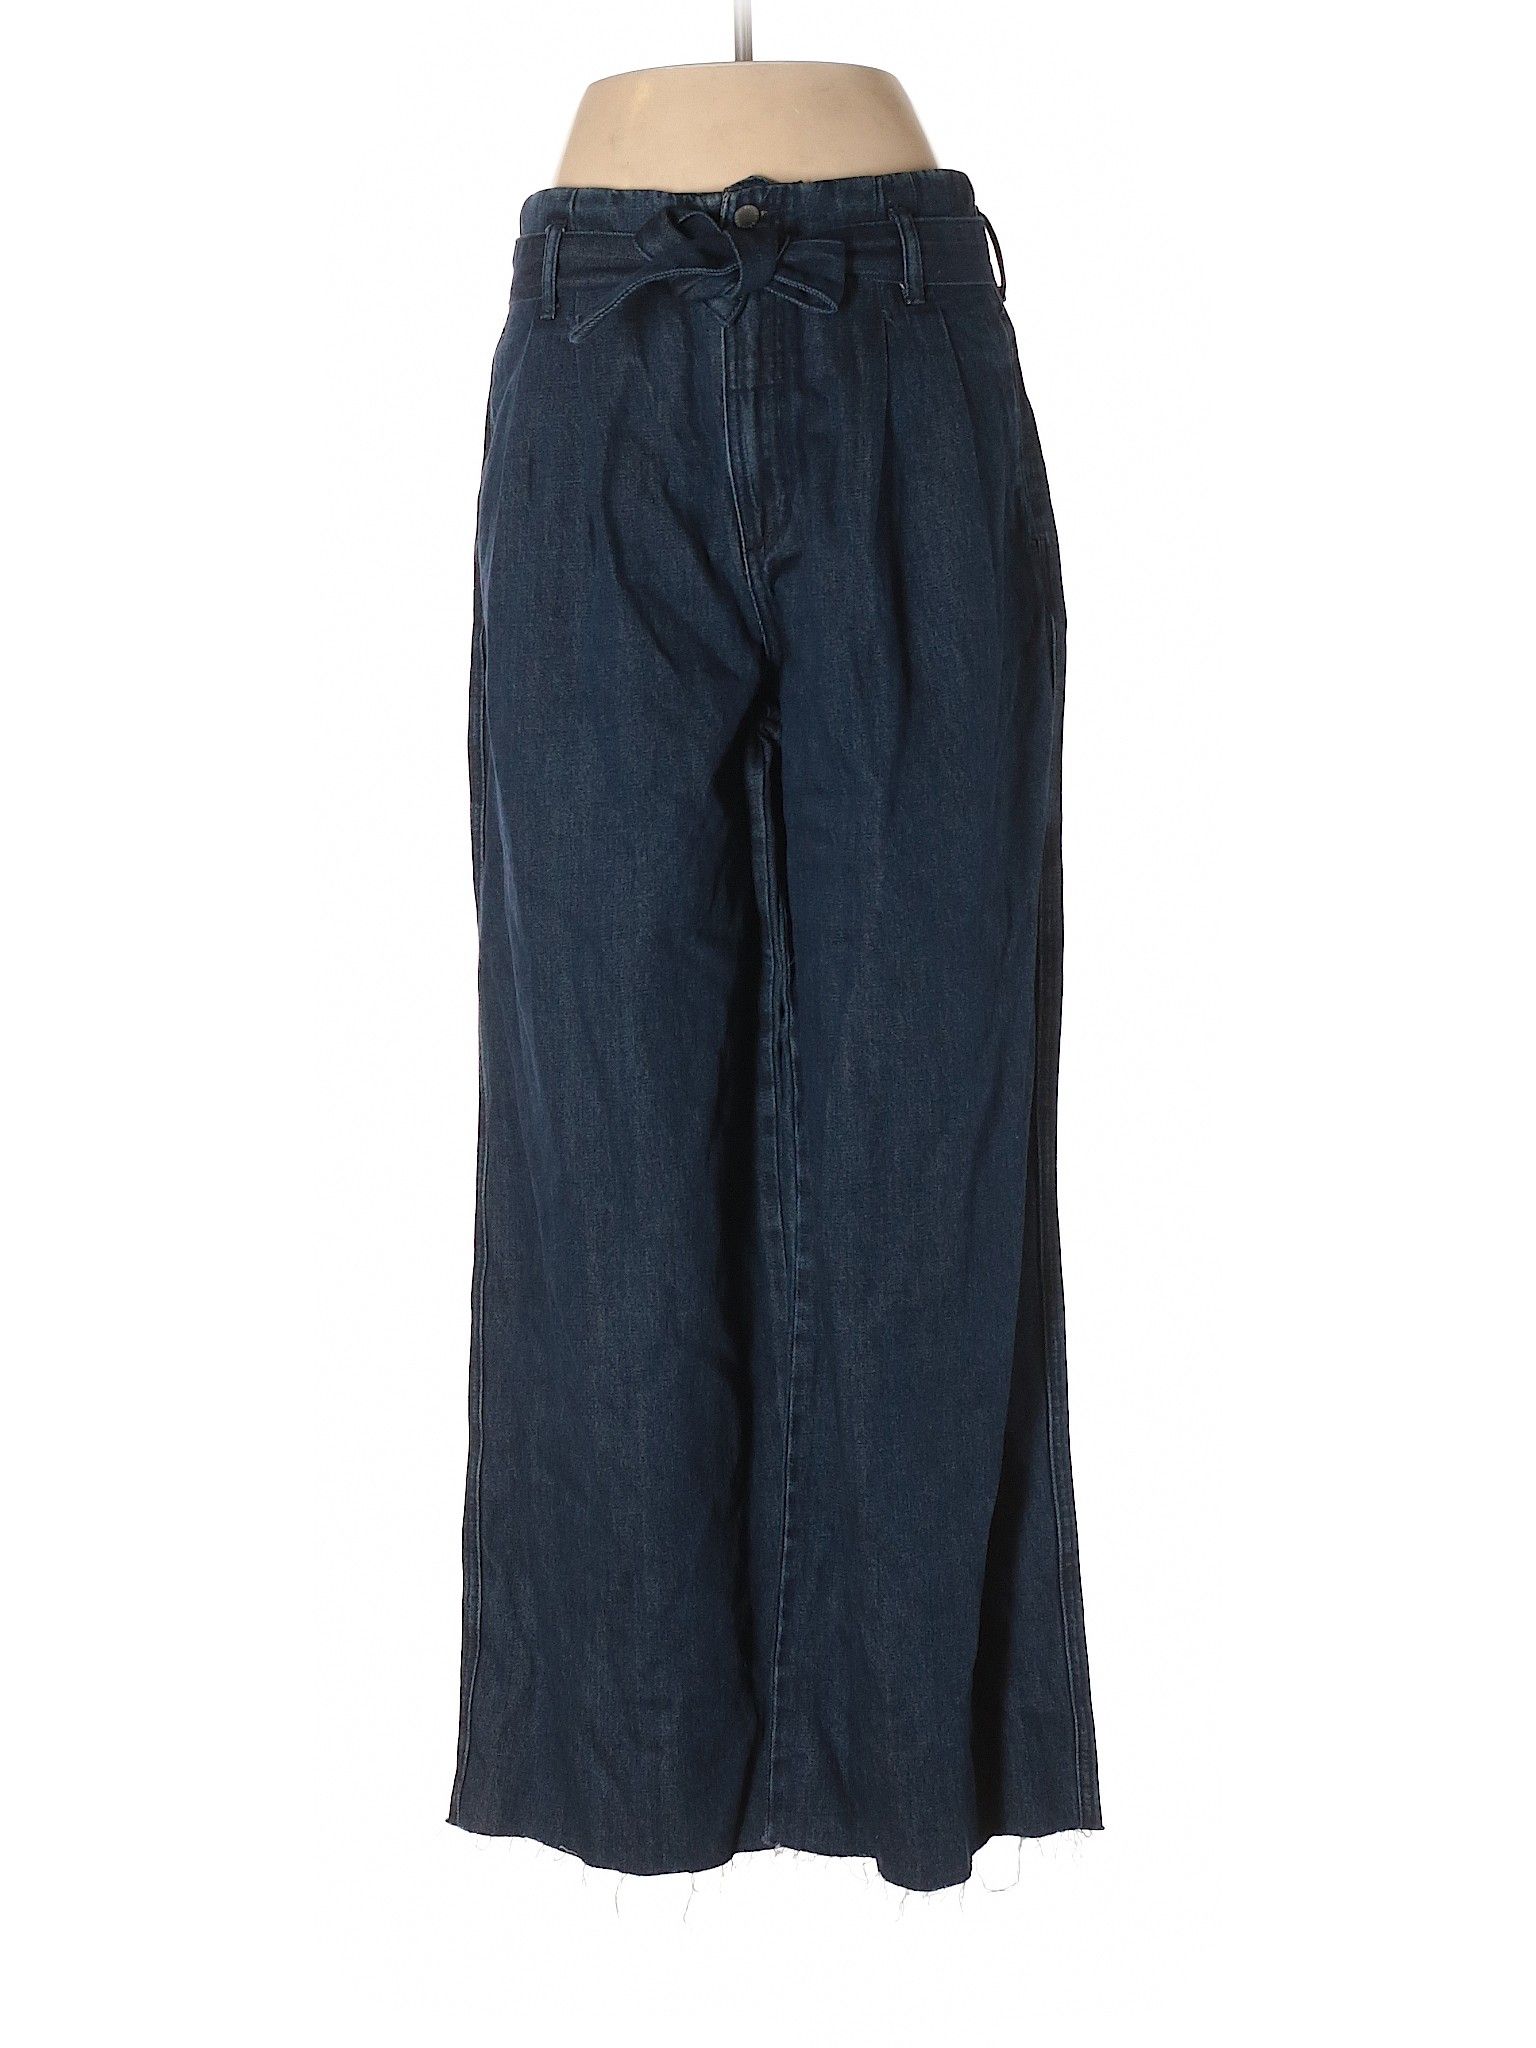 Trafaluc by Zara Jeans Size 8: Dark Blue Women's Bottoms - 43359293 | thredUP